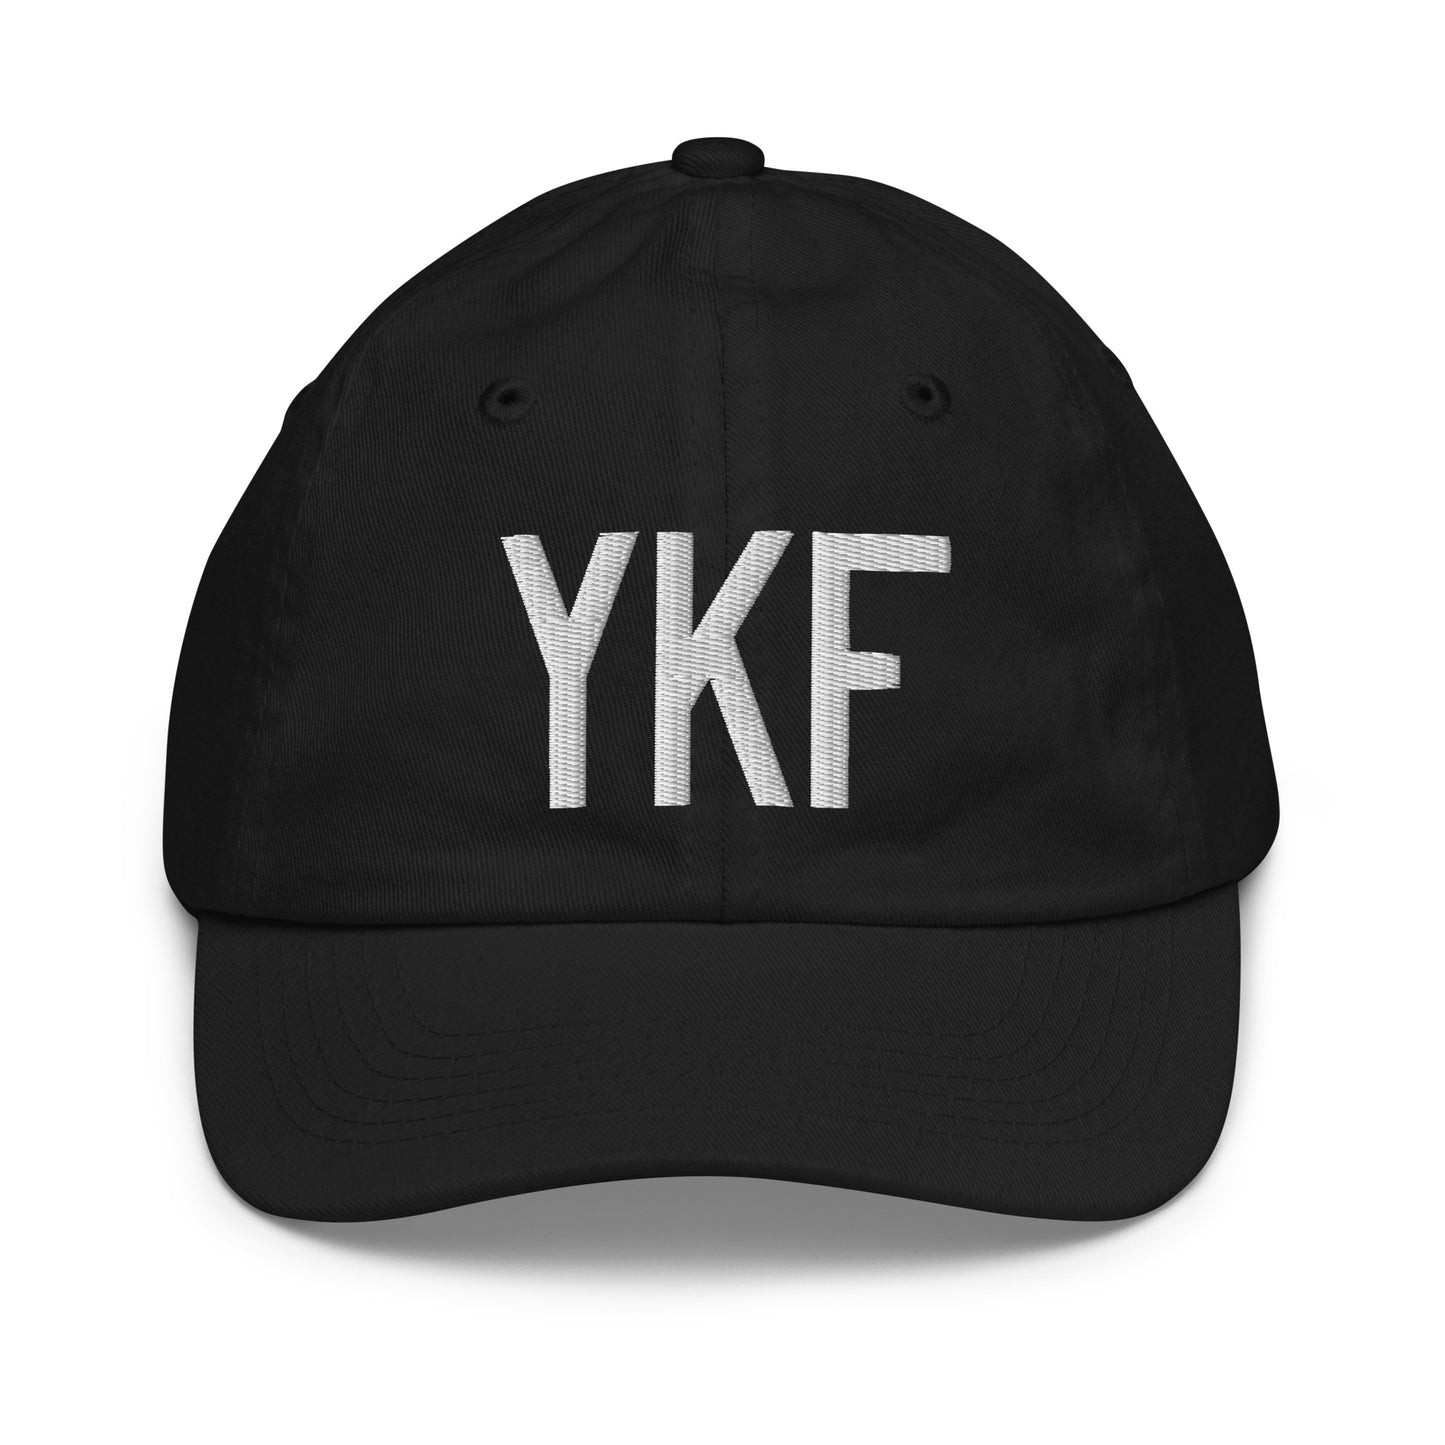 Airport Code Kid's Baseball Cap - White • YKF Waterloo • YHM Designs - Image 11